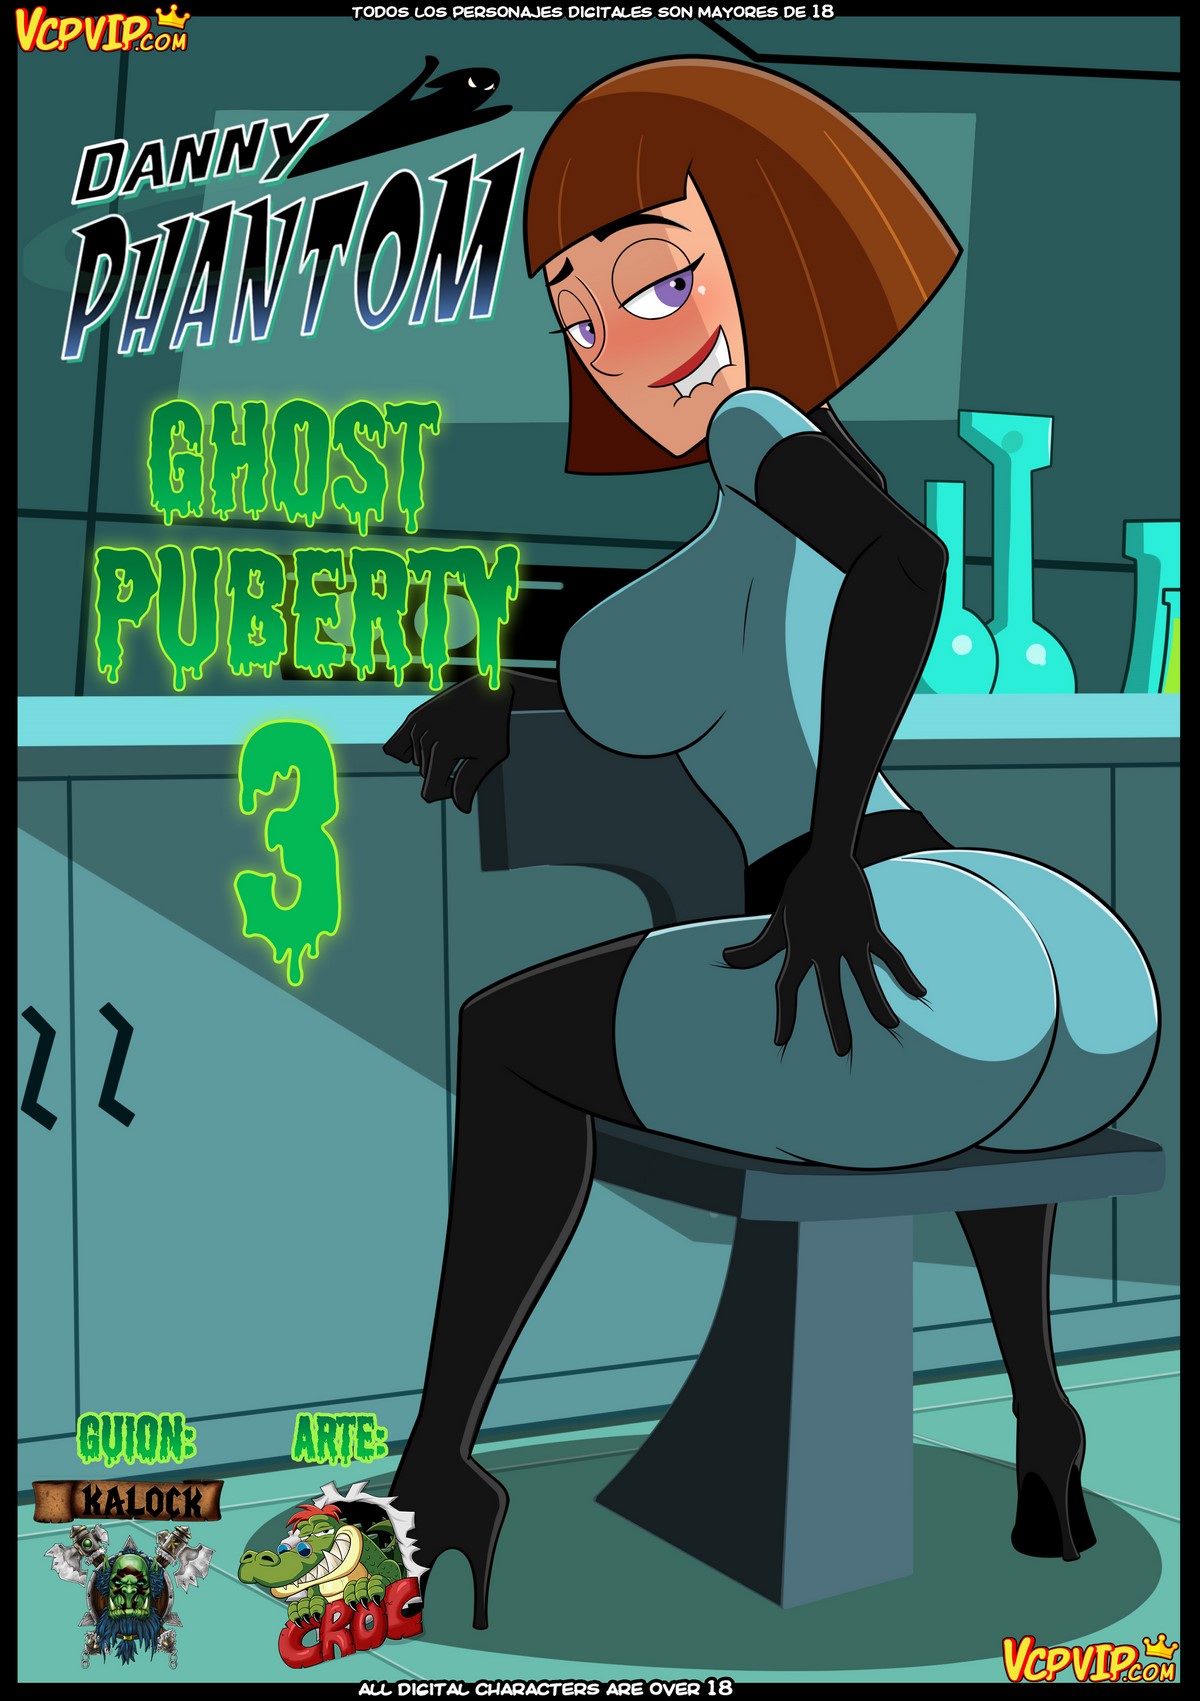 Porn danny phantom